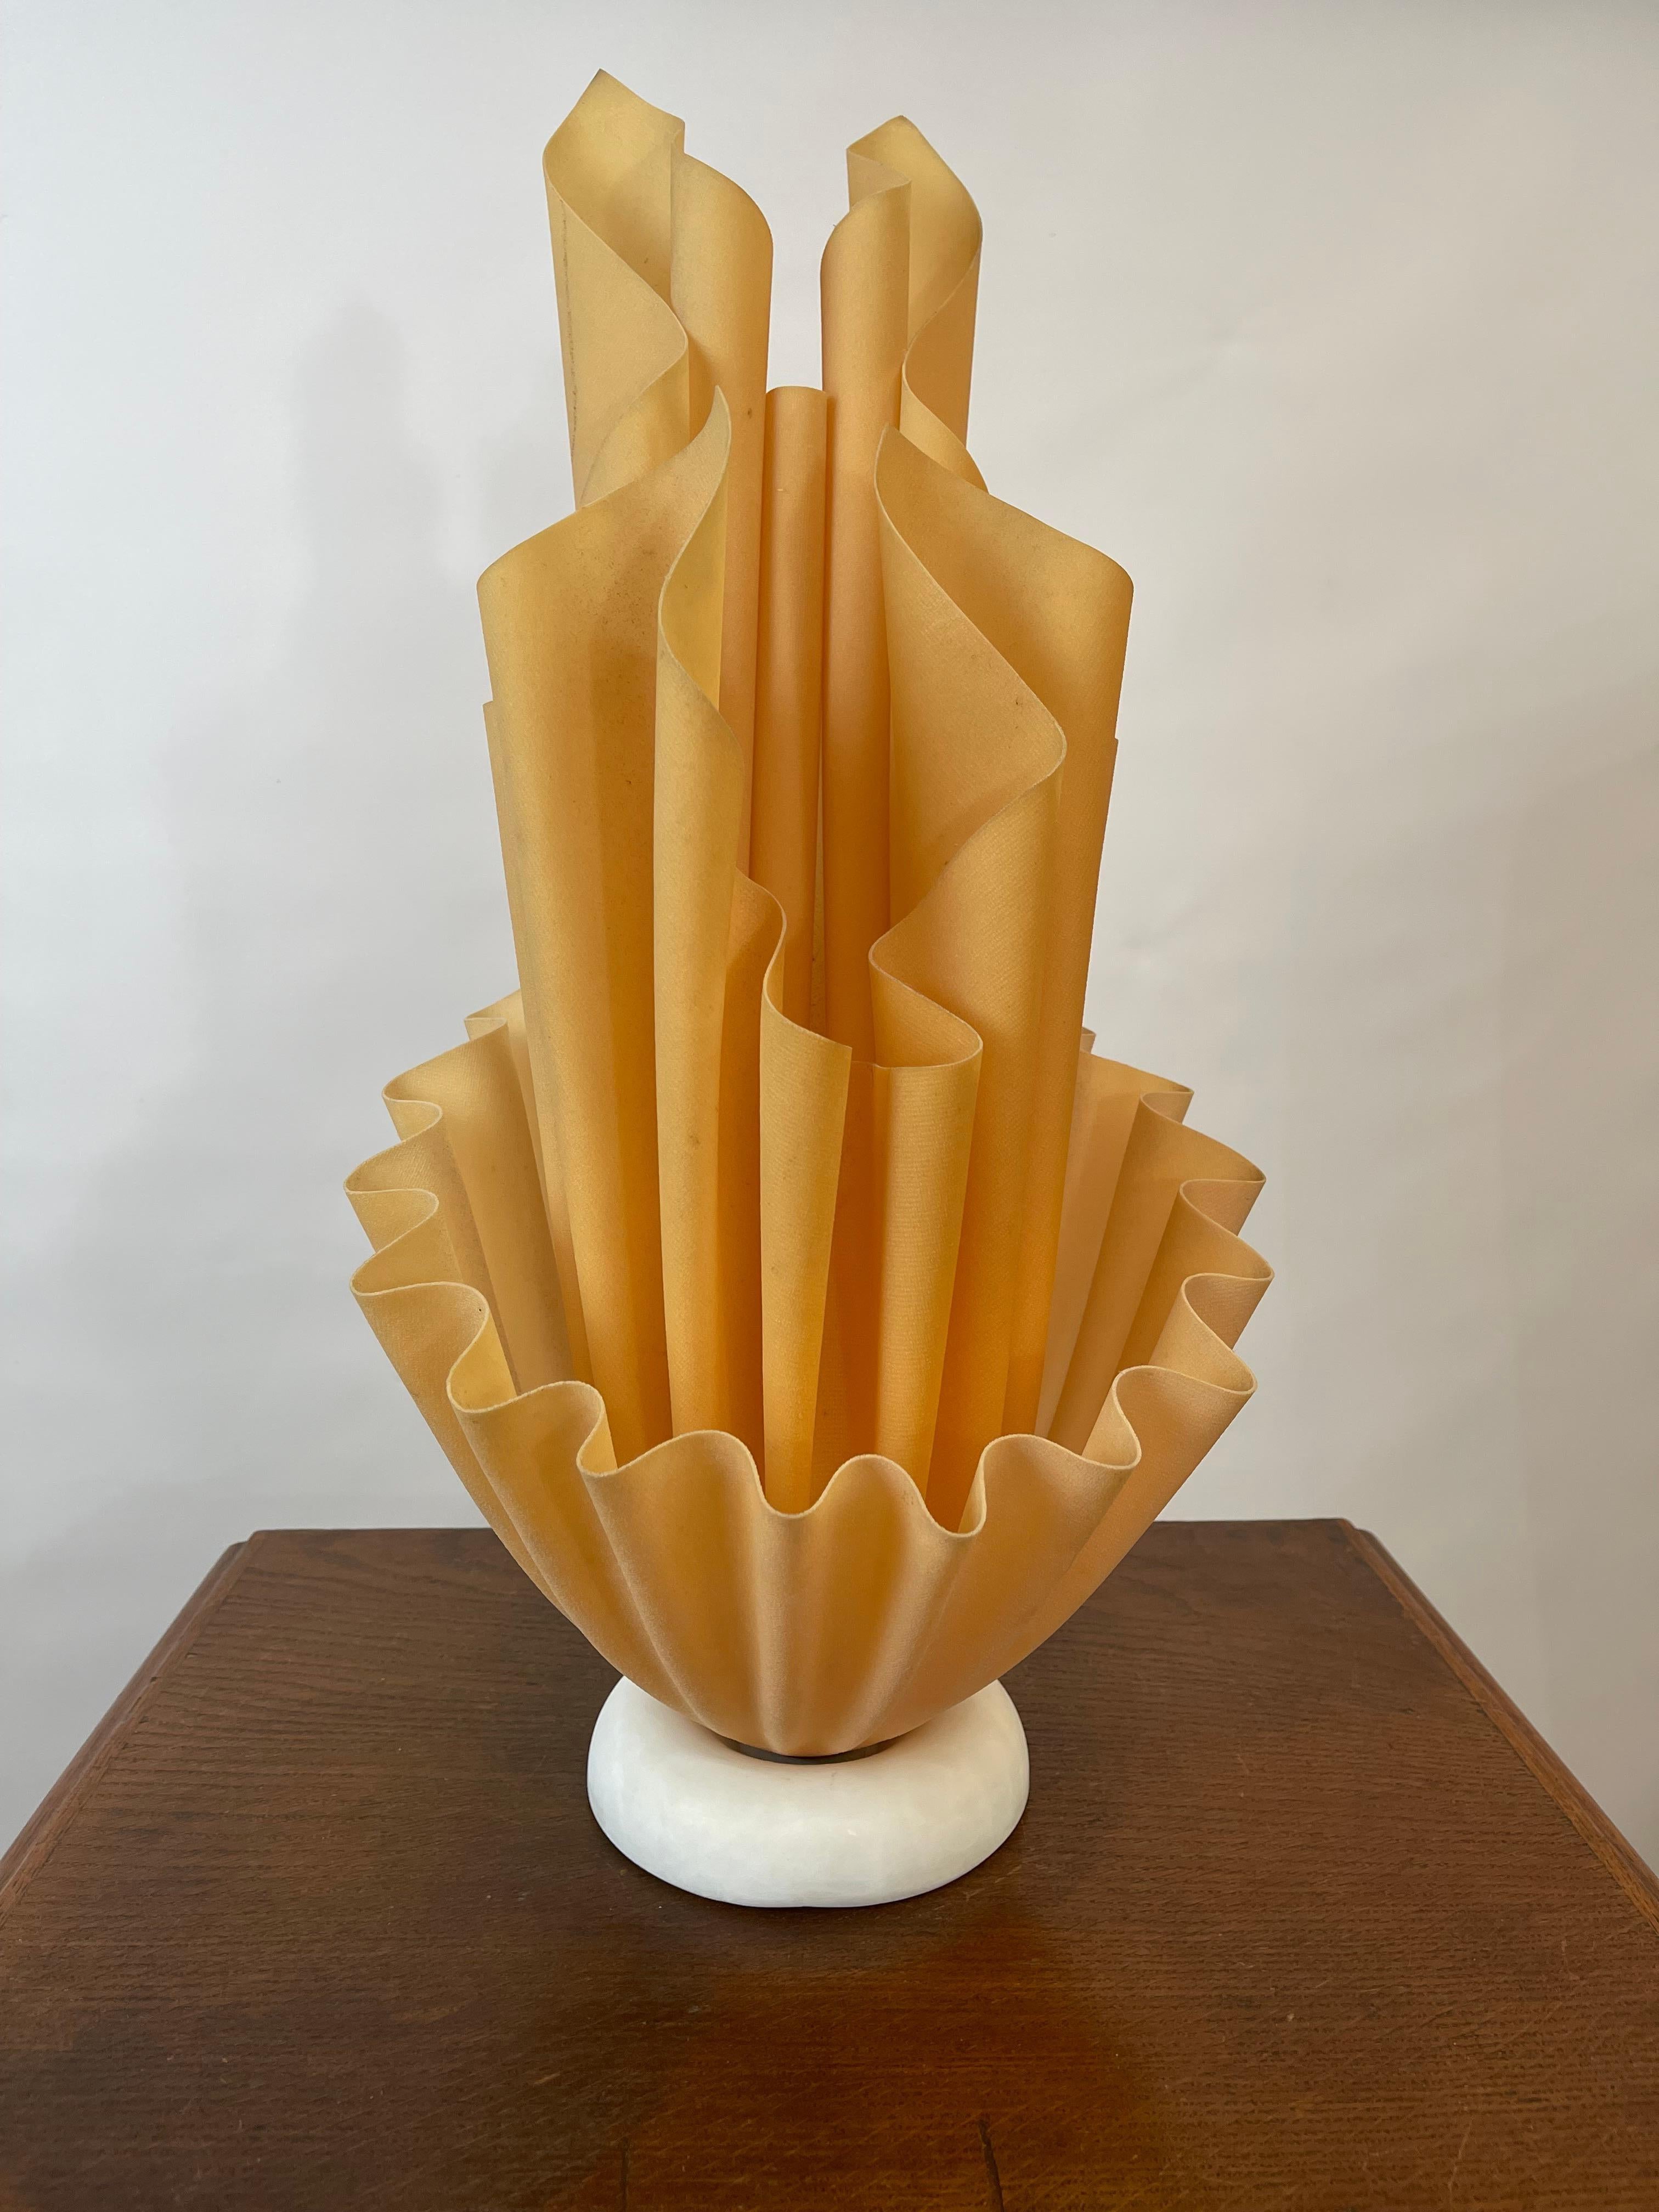 Grande lampe Georgia Jacob, modèle Corolle, de couleur orange corail, fabriquée en France dans les années 1970. 
Inspirées par la forme d'une torche enflammée, ces lampes créent de magnifiques tourbillons et draperies de lumière. Agréable à l'œil,